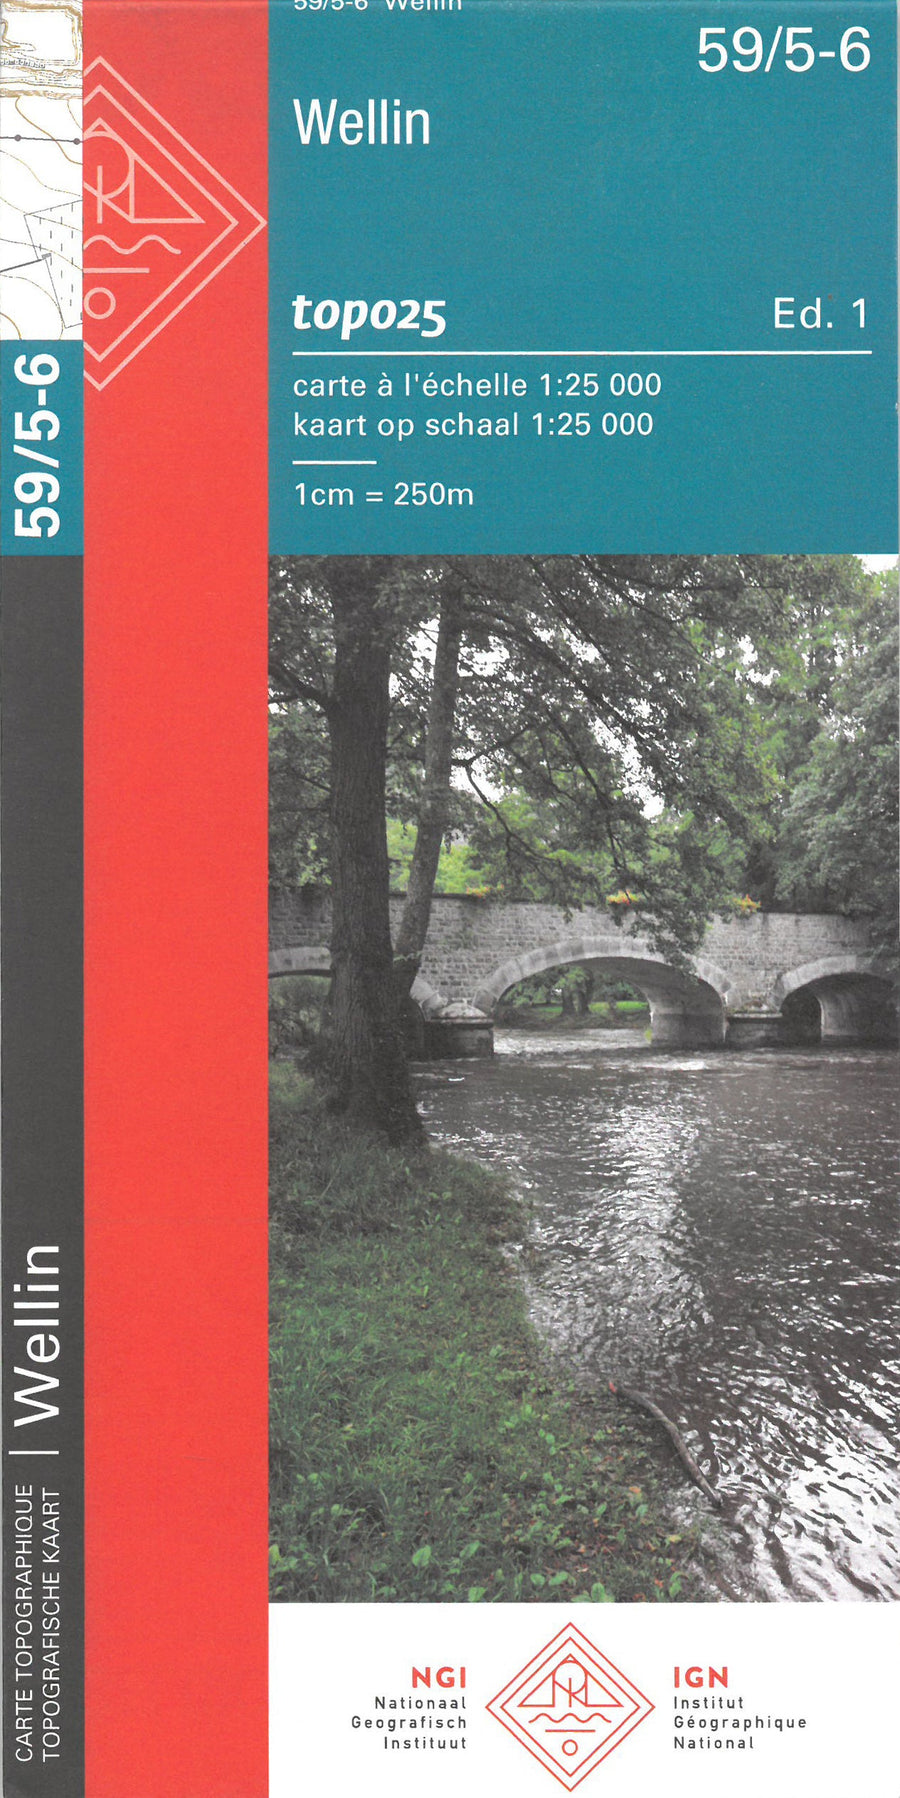 Carte topographique n° 59/5-6 - Wellin (Belgique) | NGI topo 25 carte pliée IGN Belgique 